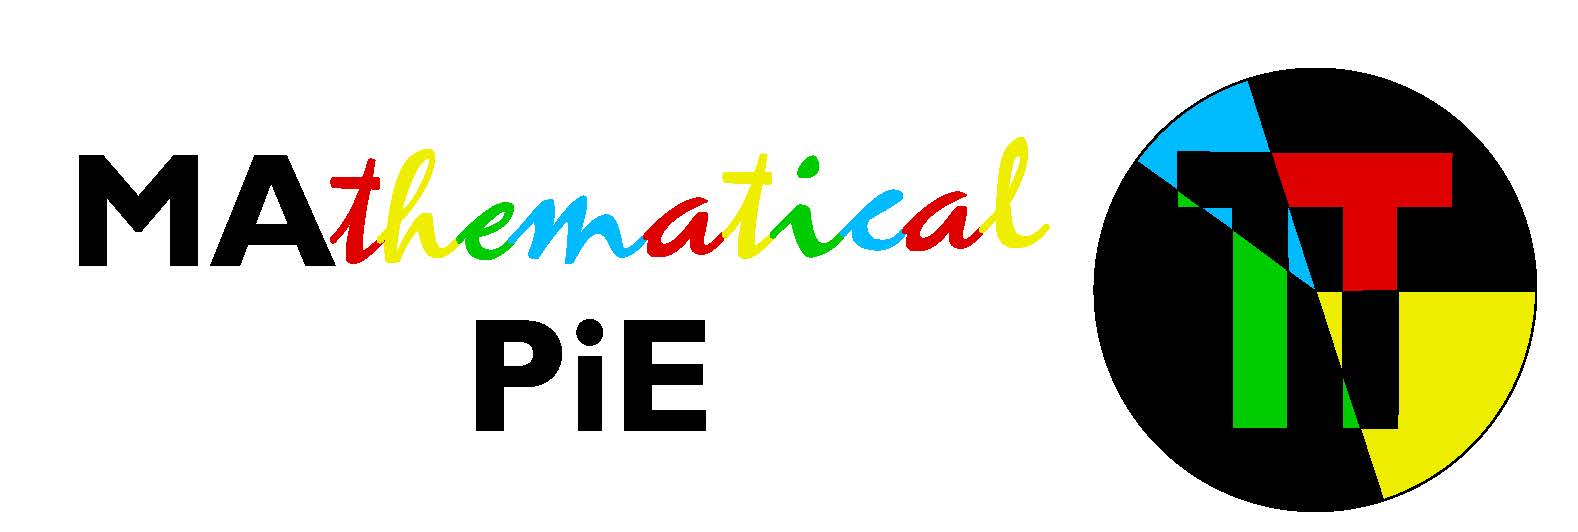 Mathematica Pie